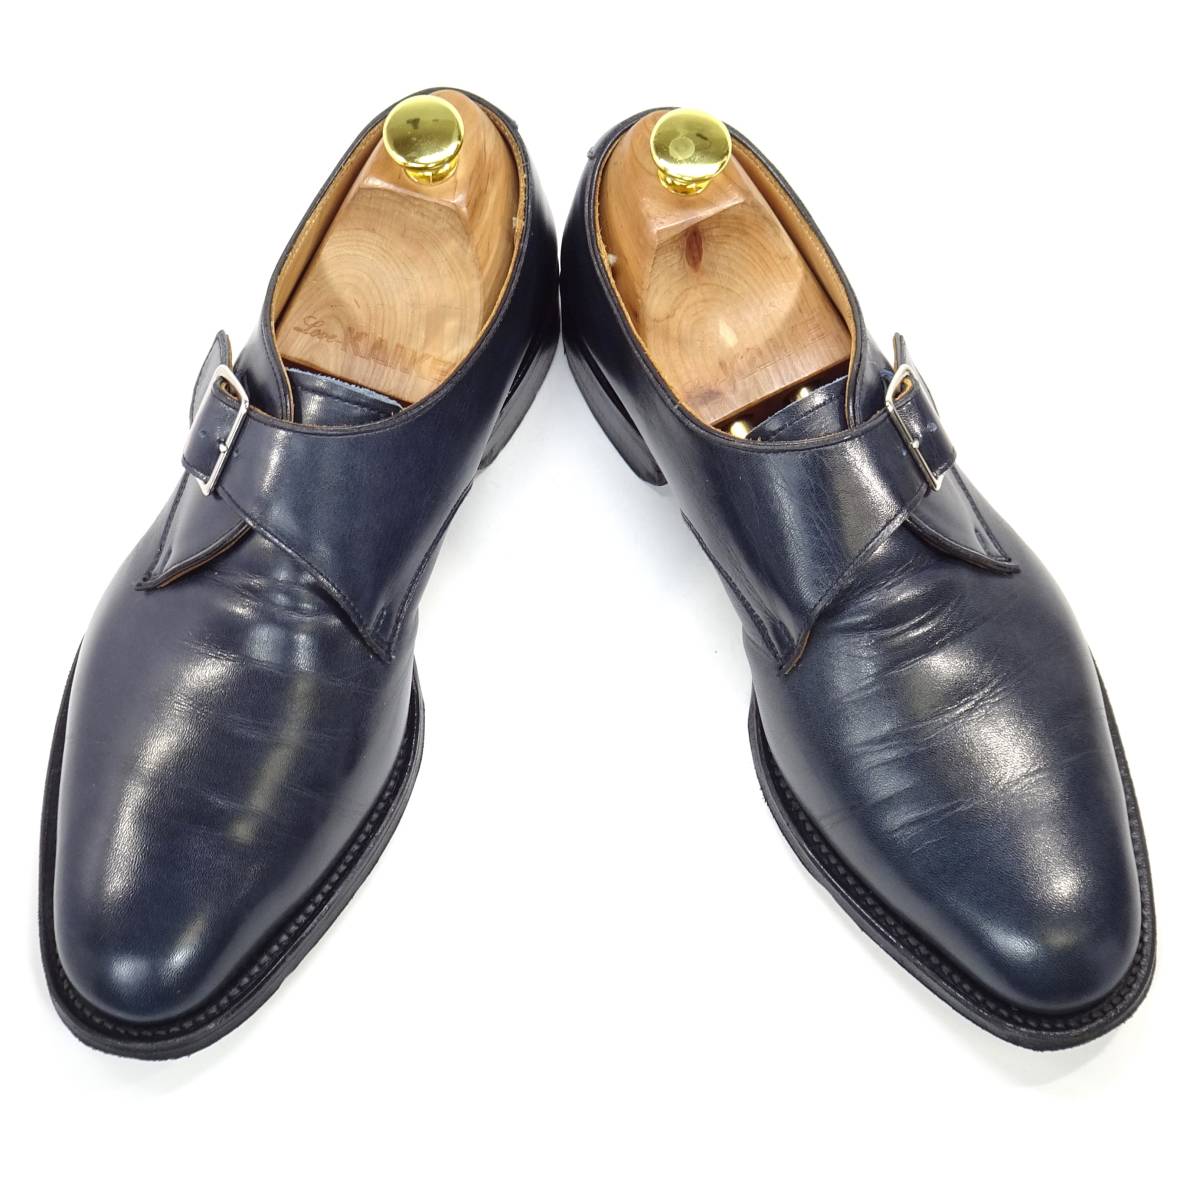 即決 SHETLAND FOX 24.5cm モンクストラップ シェットランドフォックス メンズ 6.5 ネイビー 本革 ビジネスシューズ 本皮 高級紳士靴 革靴